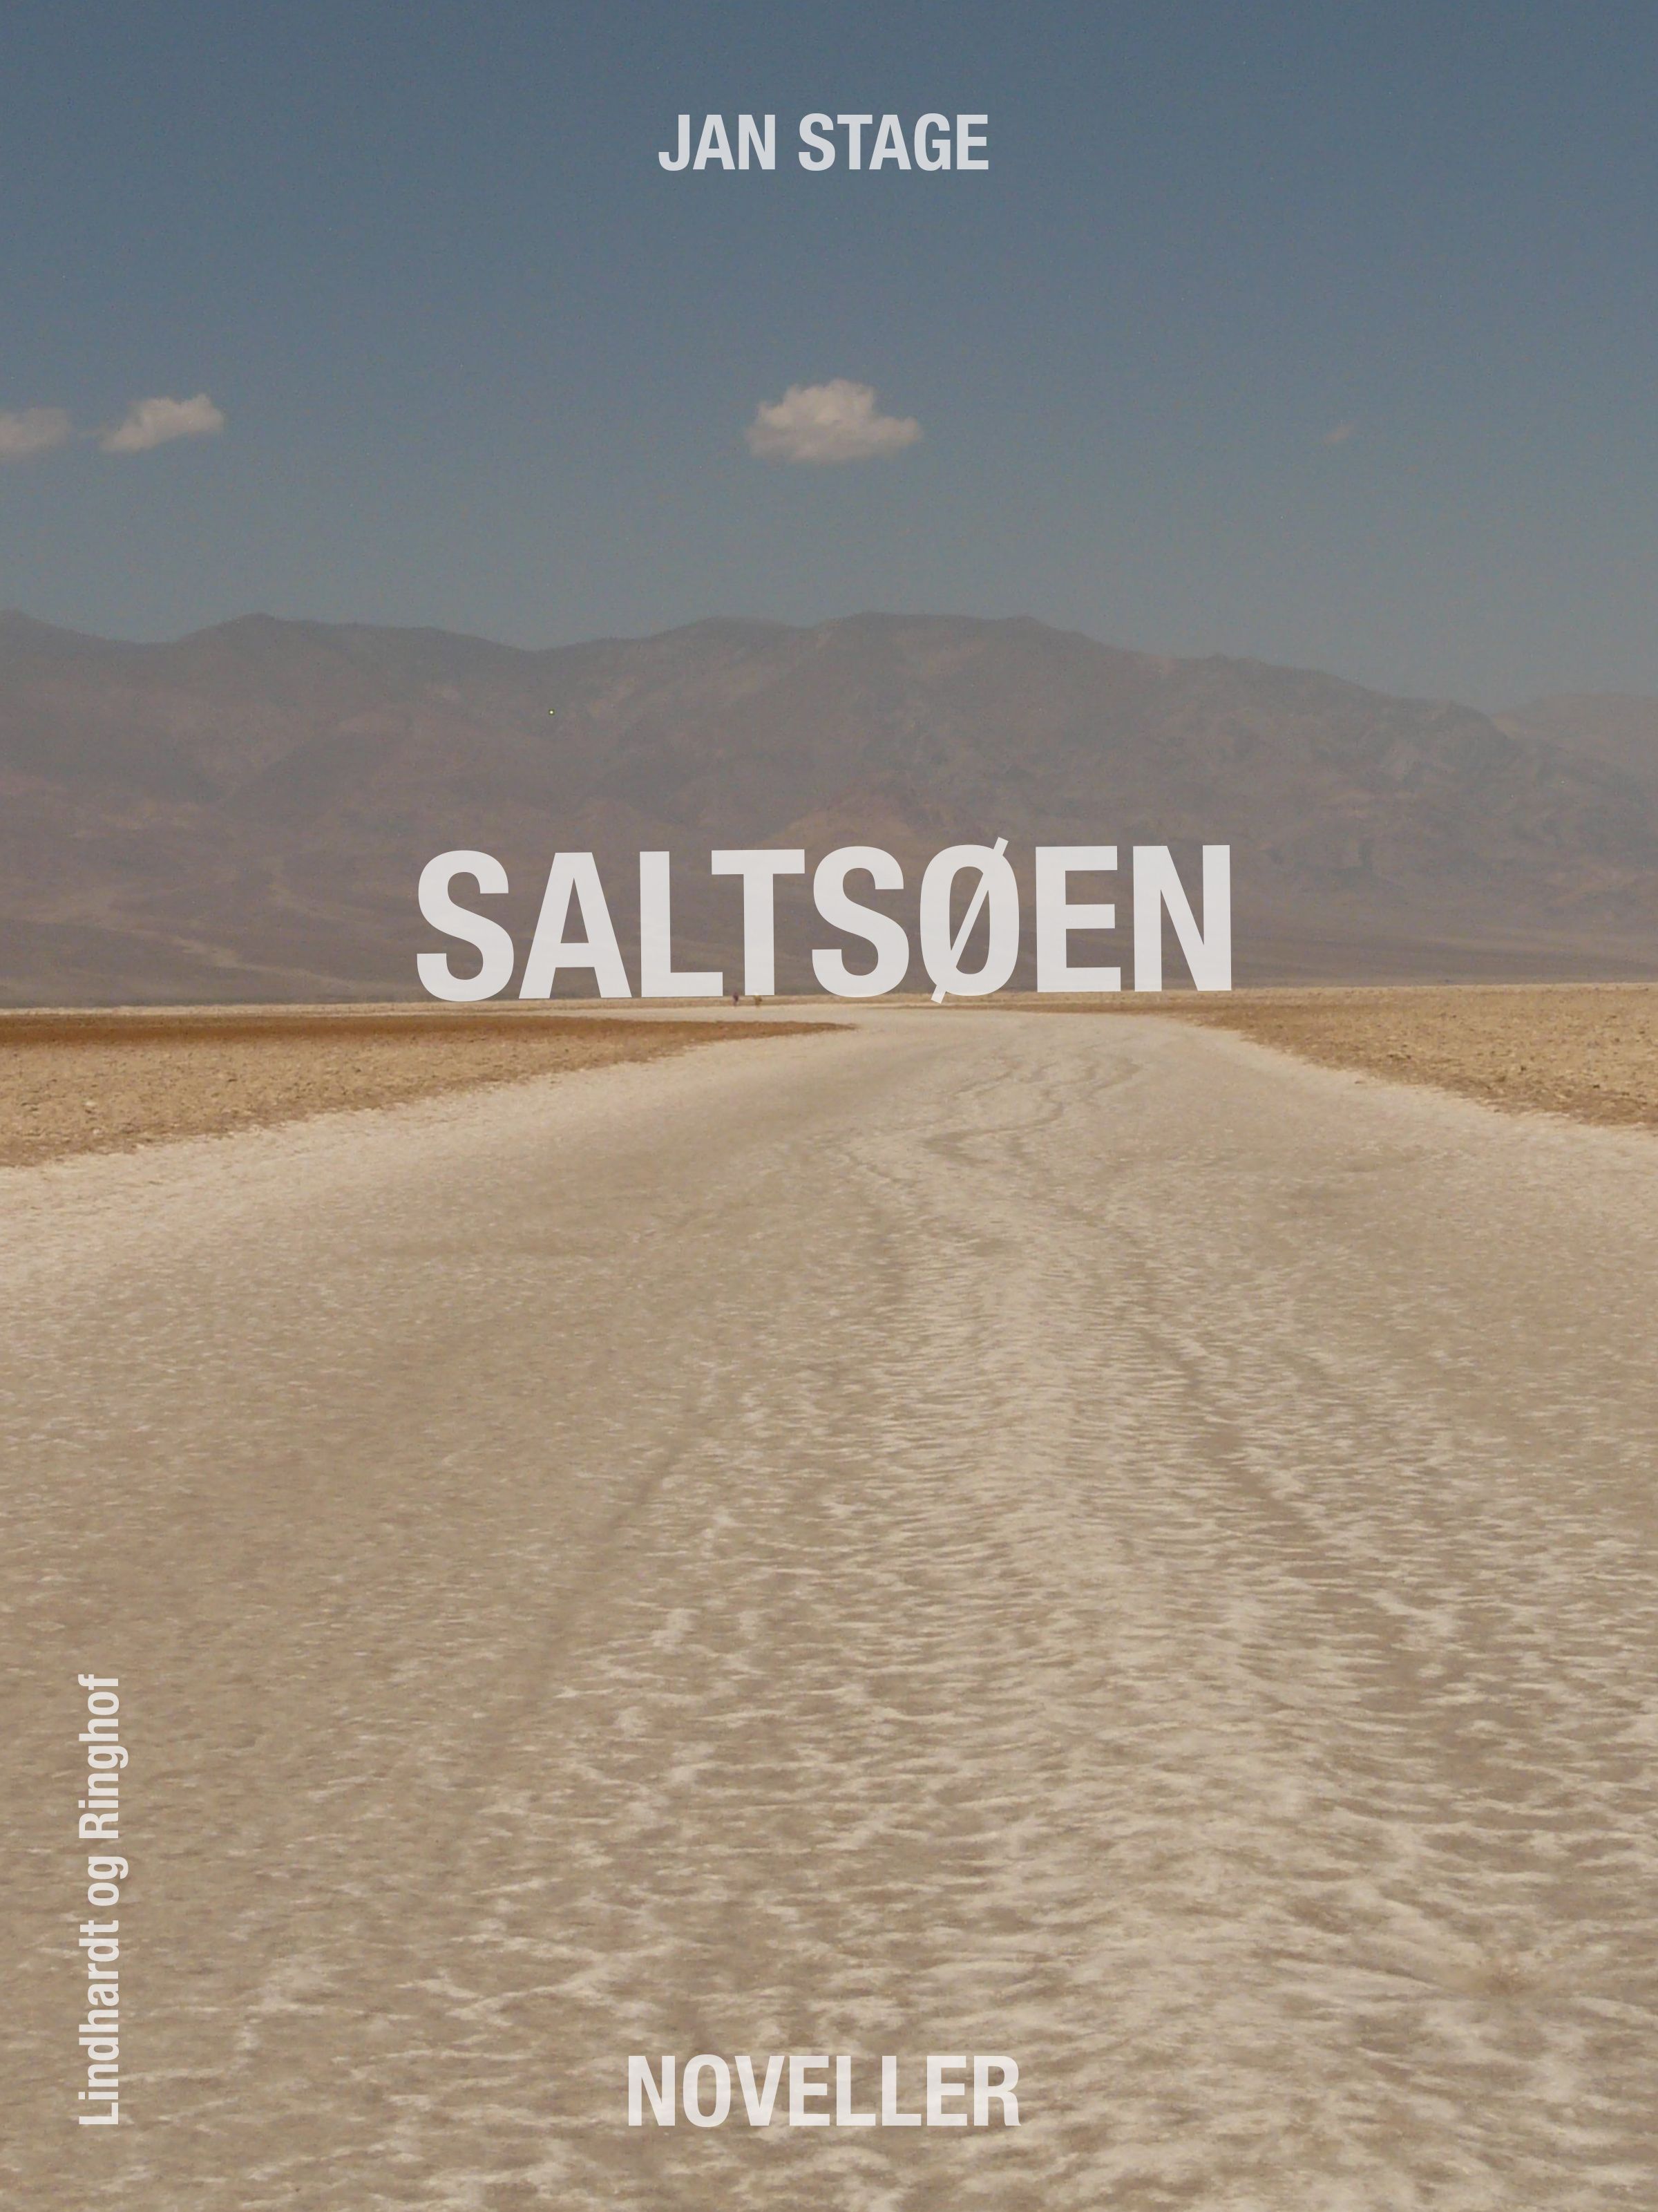 Saltsøen, audiobook by Jan Stage